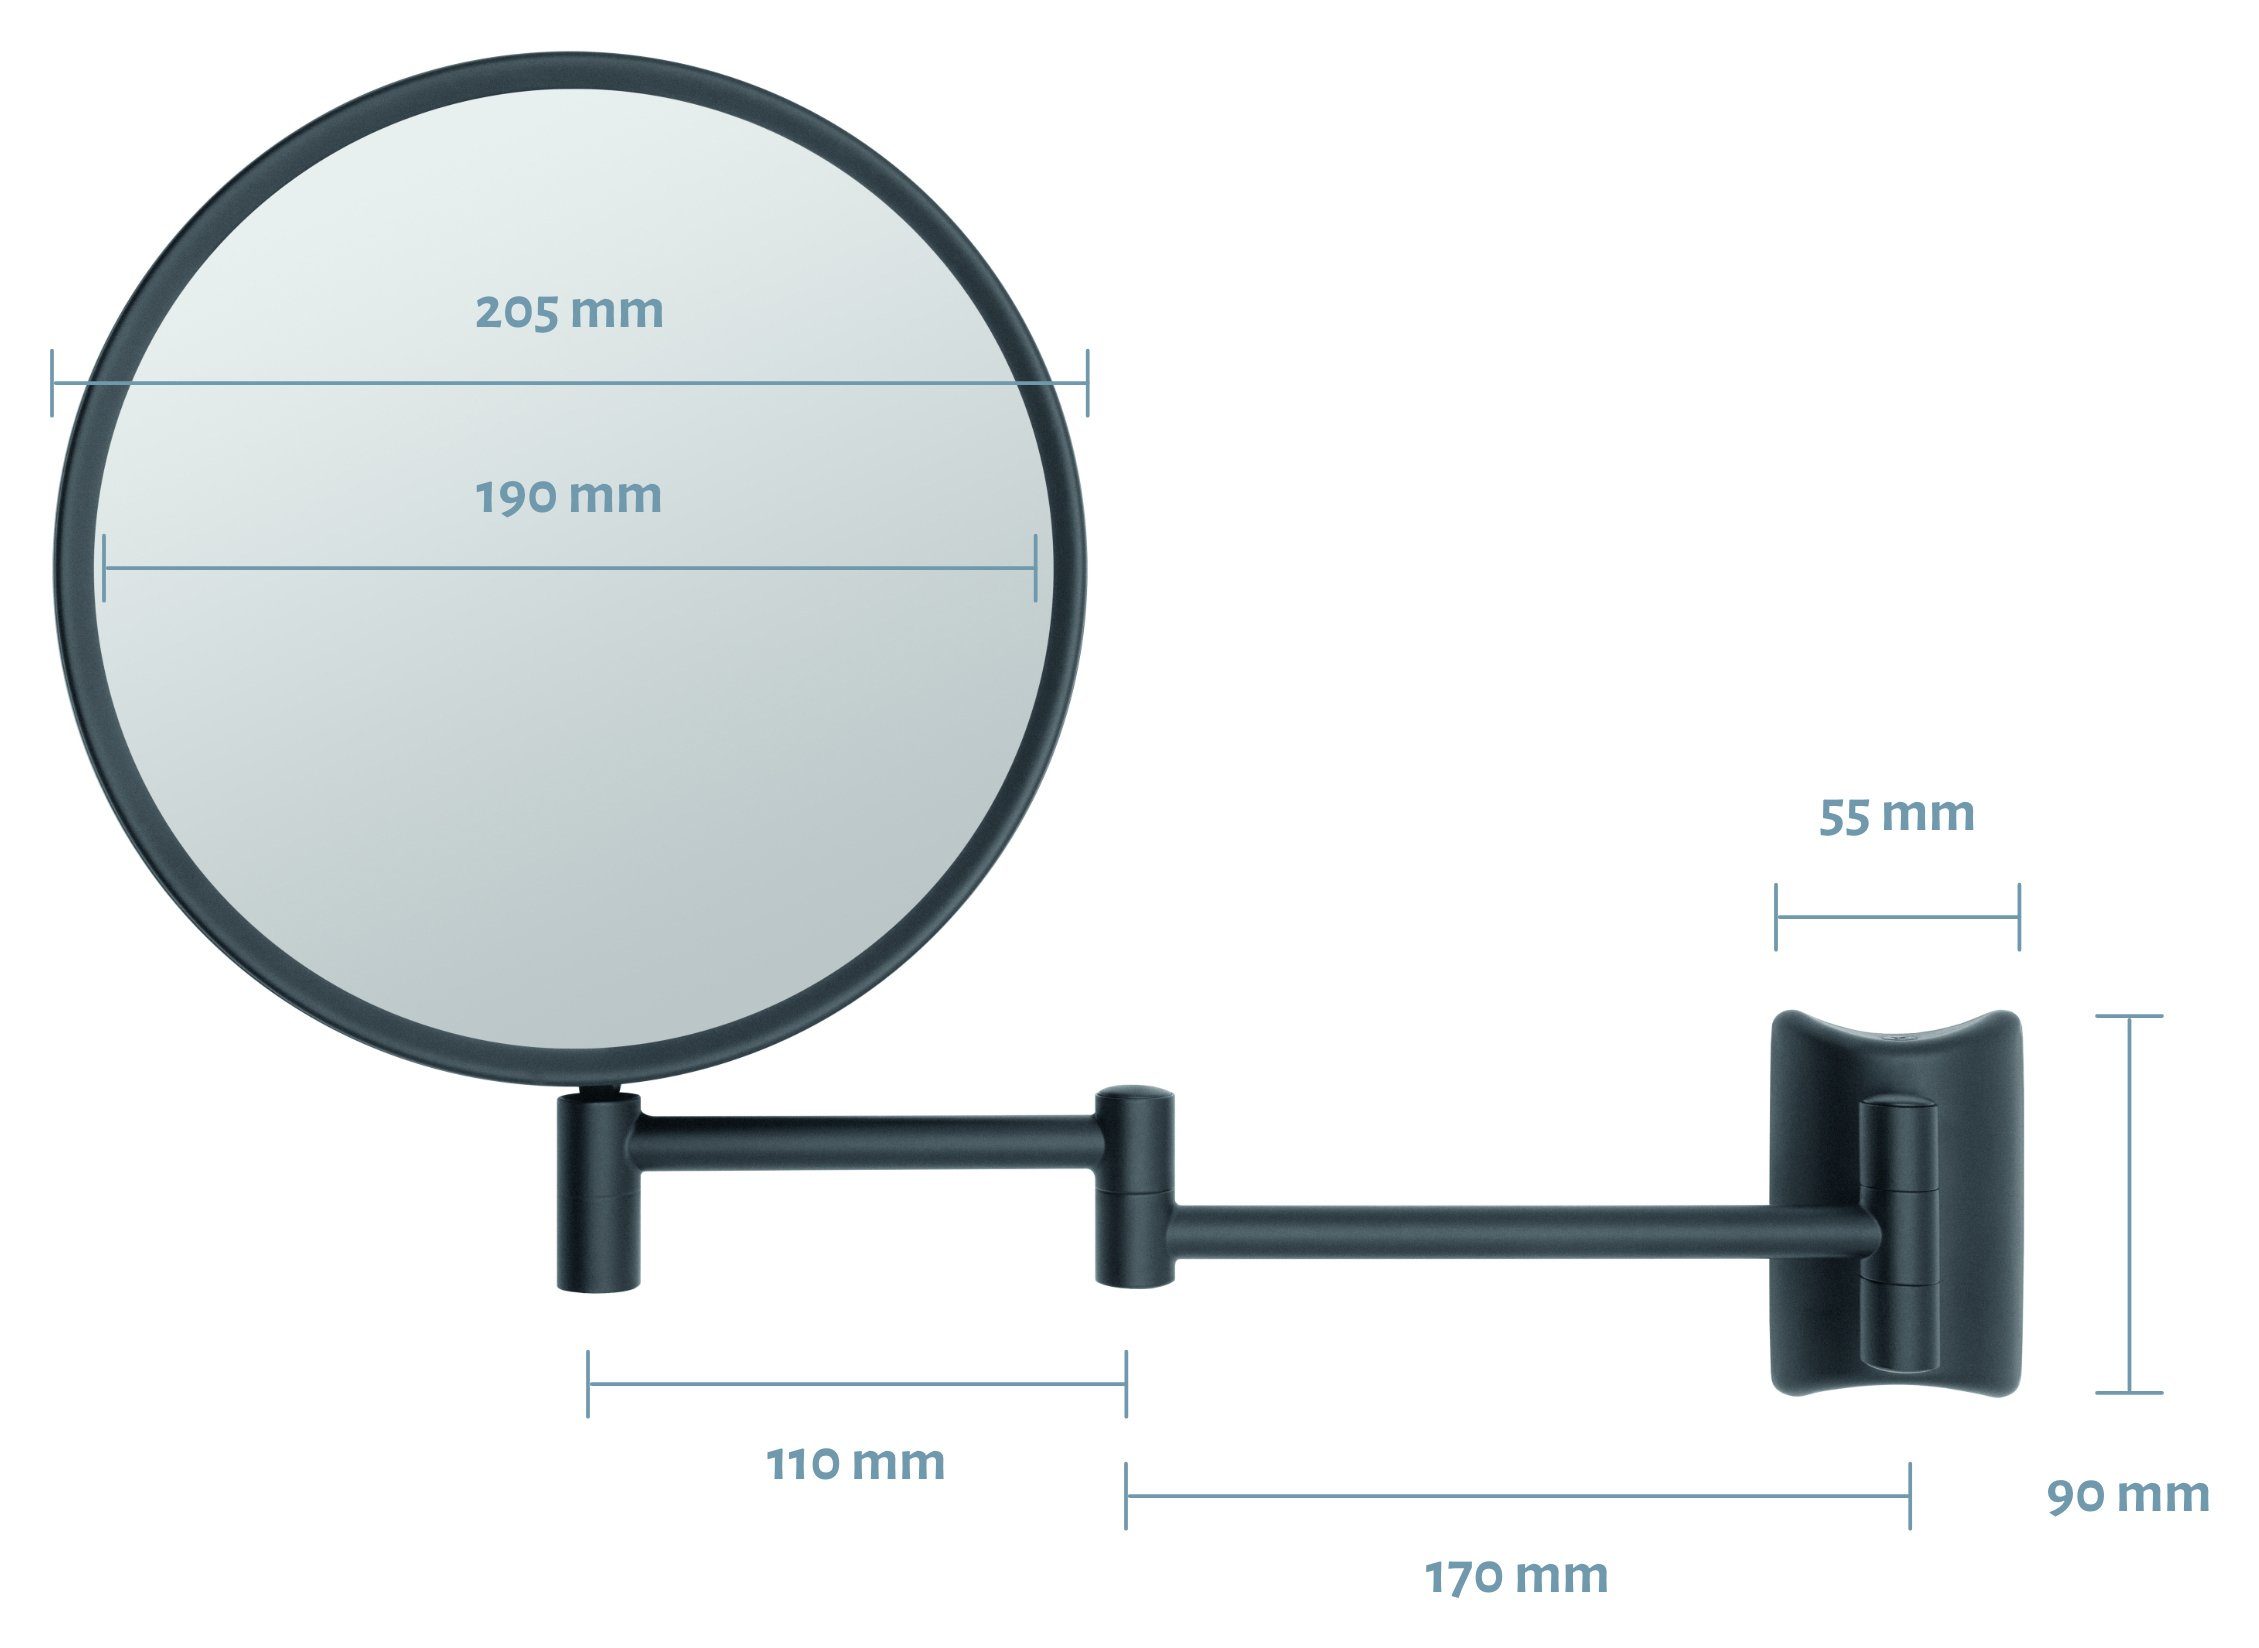 Kosmetikspiegel 360° Libaro Imola, Rasierspiegel 2-seitig Schminkspiegel schwarz Vergrößerung 3x/7x